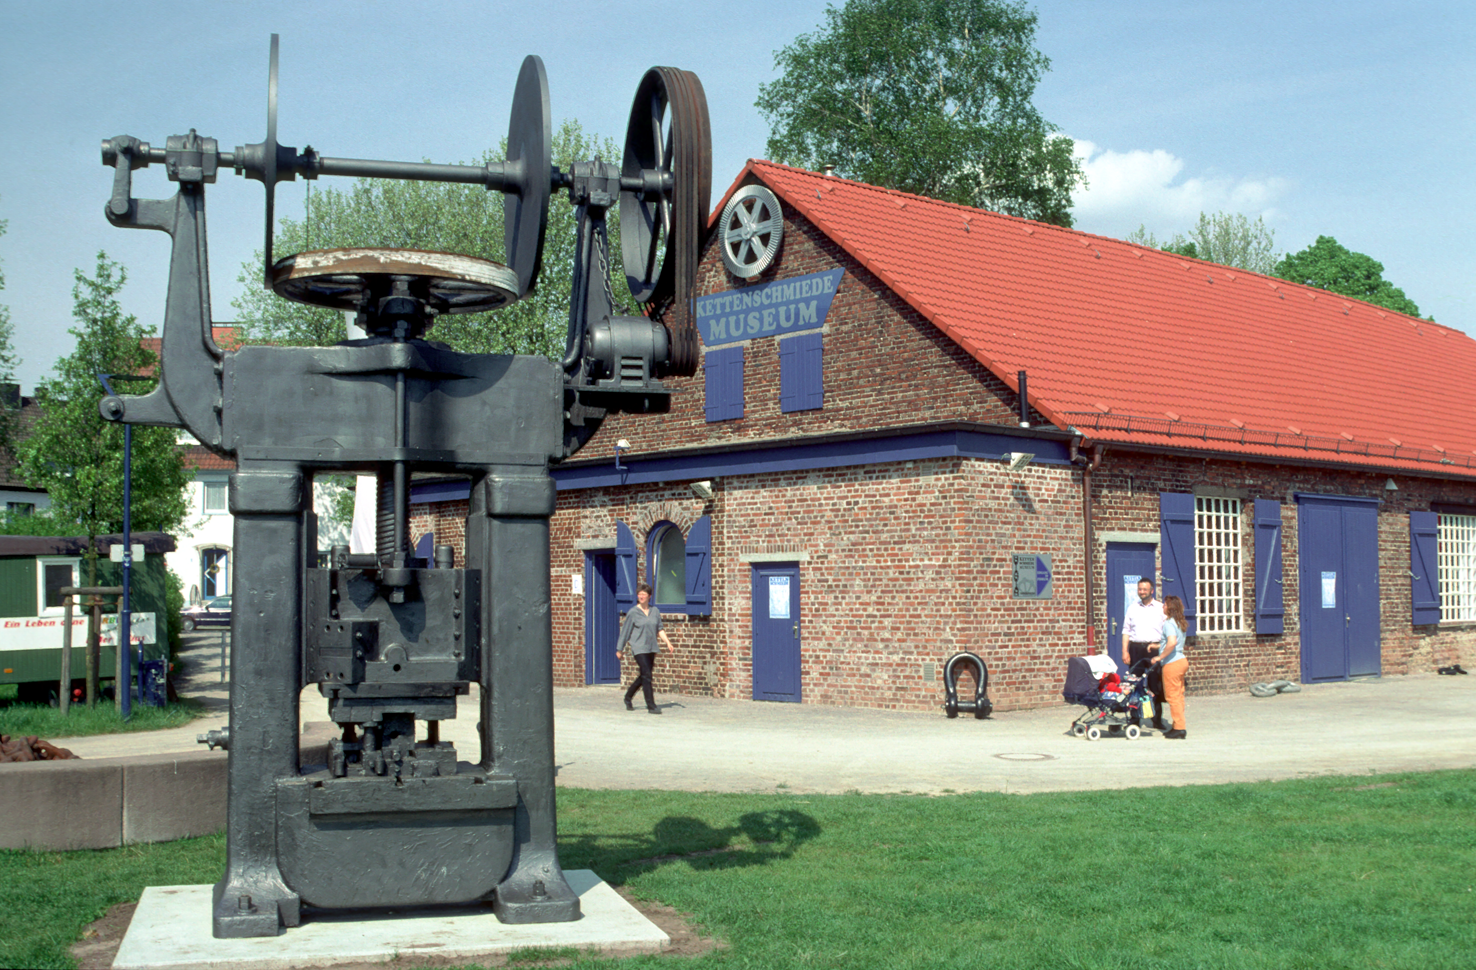 Die Produktion von Ketten bestimmte über hundert Jahre die Industriegeschichte der Stadt Fröndenberg - zu sehen im Kettenschmiedemuseum.